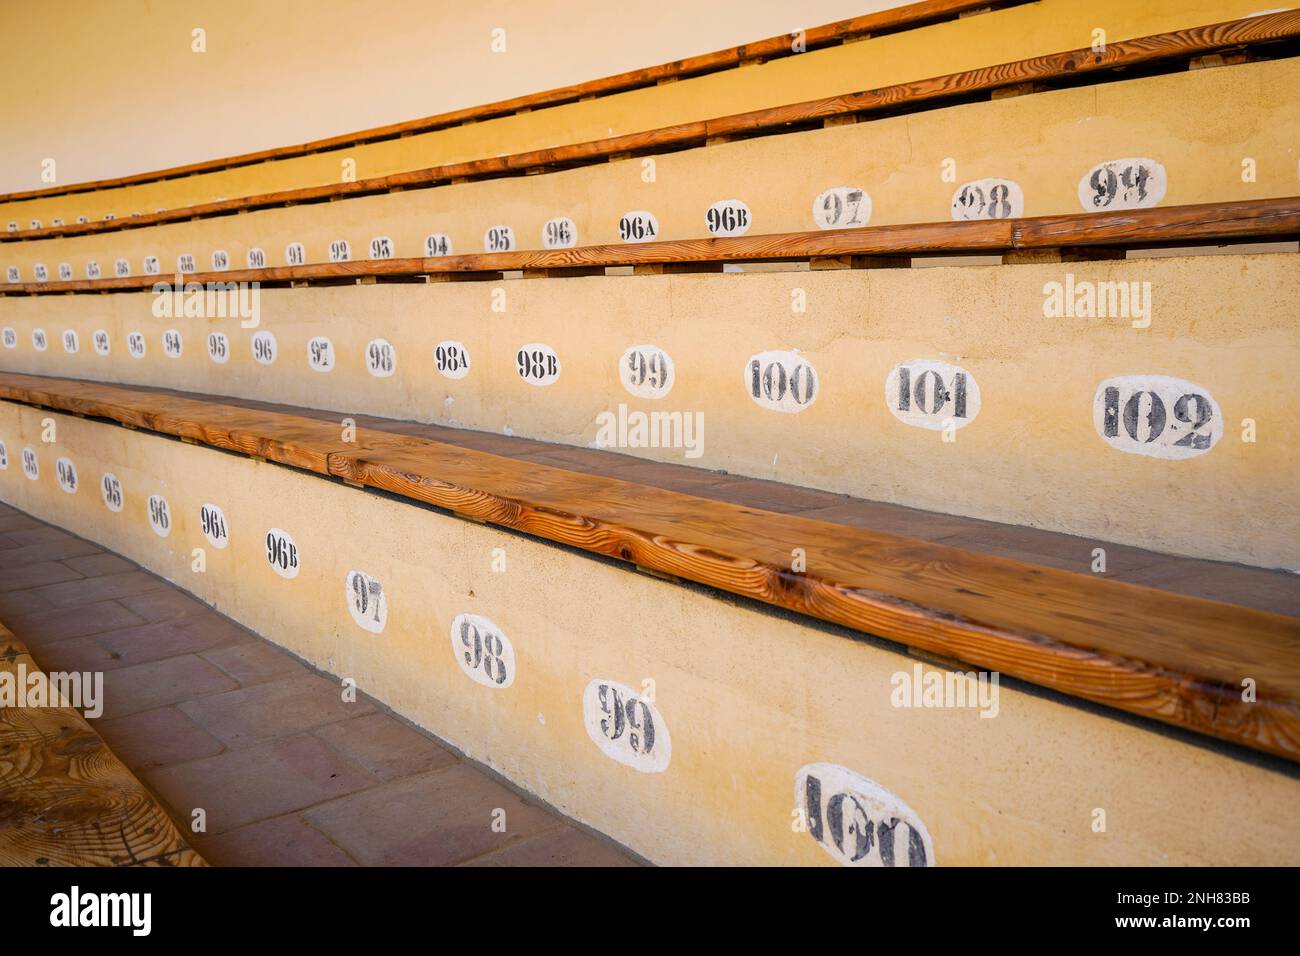 Ronda Bullring, numbered seatings in Bullrings in Spain, Ronda,  Andalucia, Spain. Stock Photo